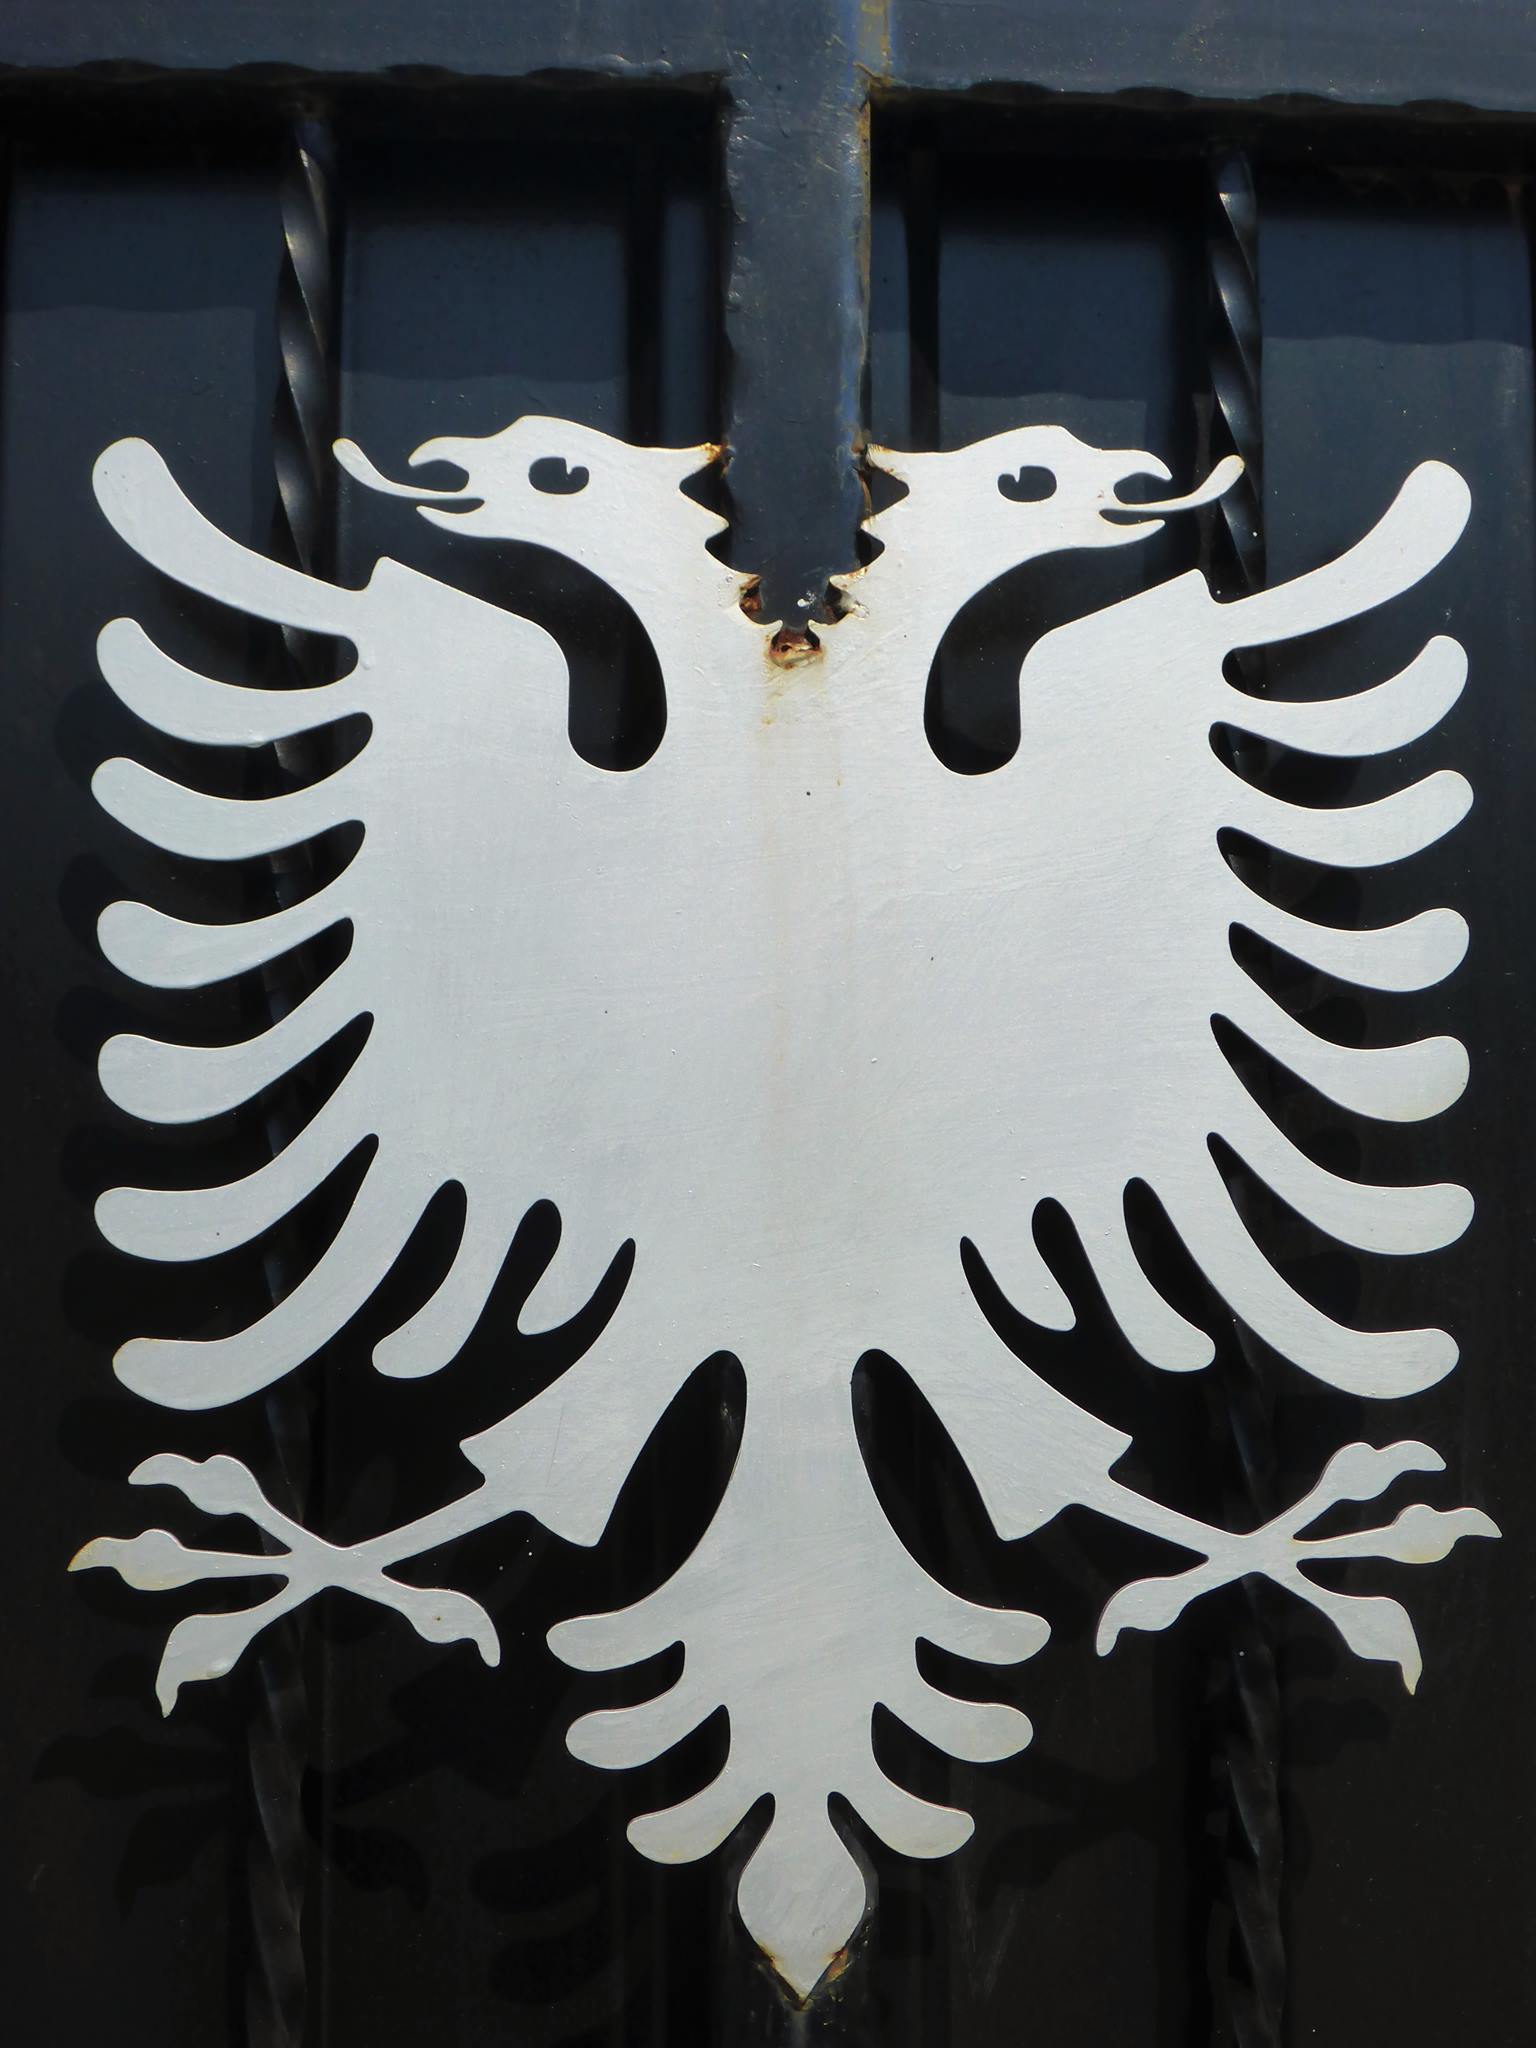 L'aigle bicéphale, symbole de l'Albanie ainsi que d'autres pays le portant aussi sur leur drapeau national.